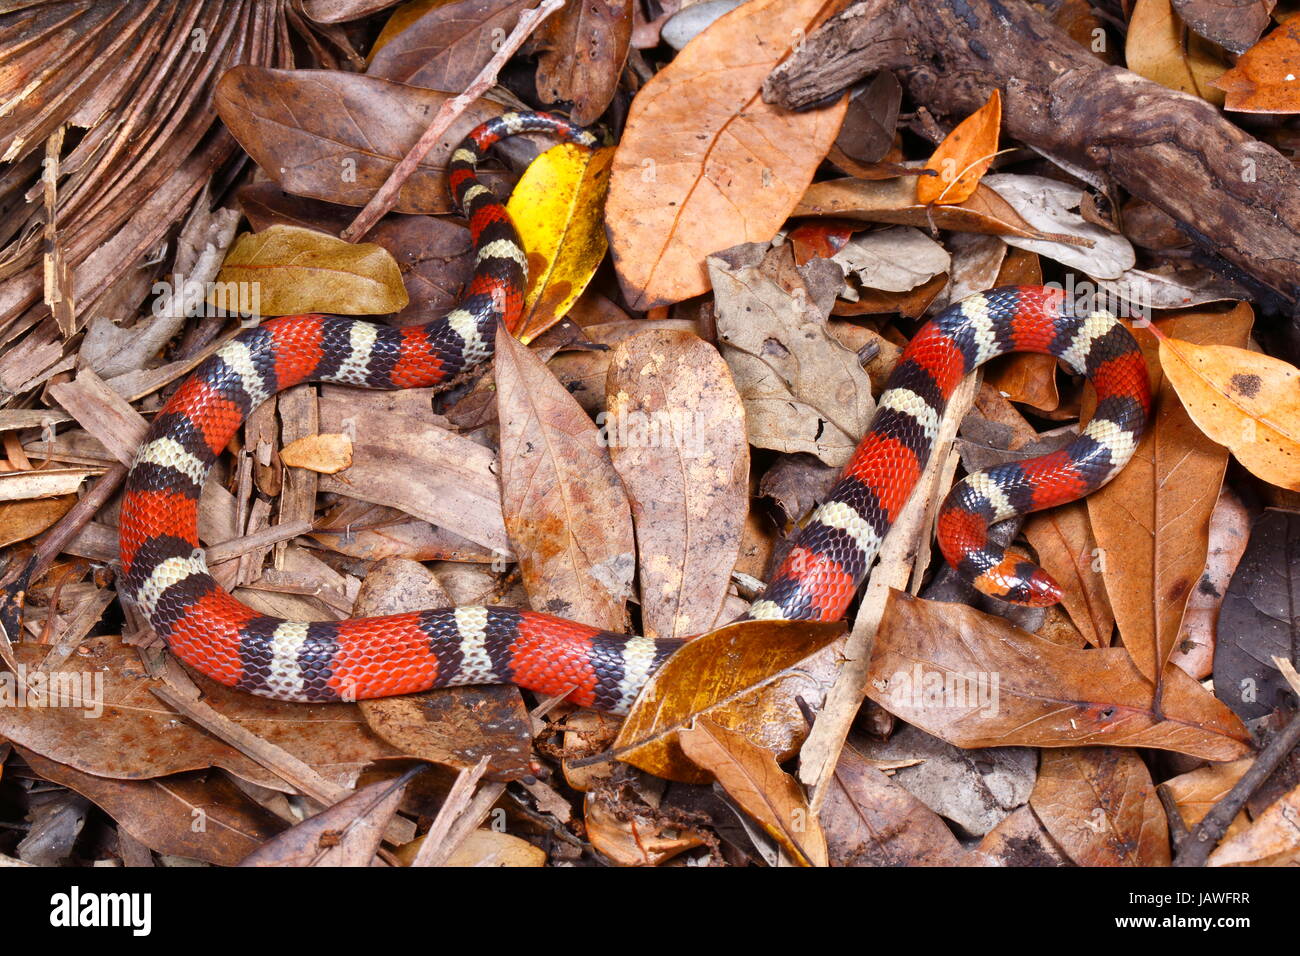 https://c8.alamy.com/comp/JAWFRR/a-scarlet-snake-cemophora-coccinea-on-leaf-litter-JAWFRR.jpg